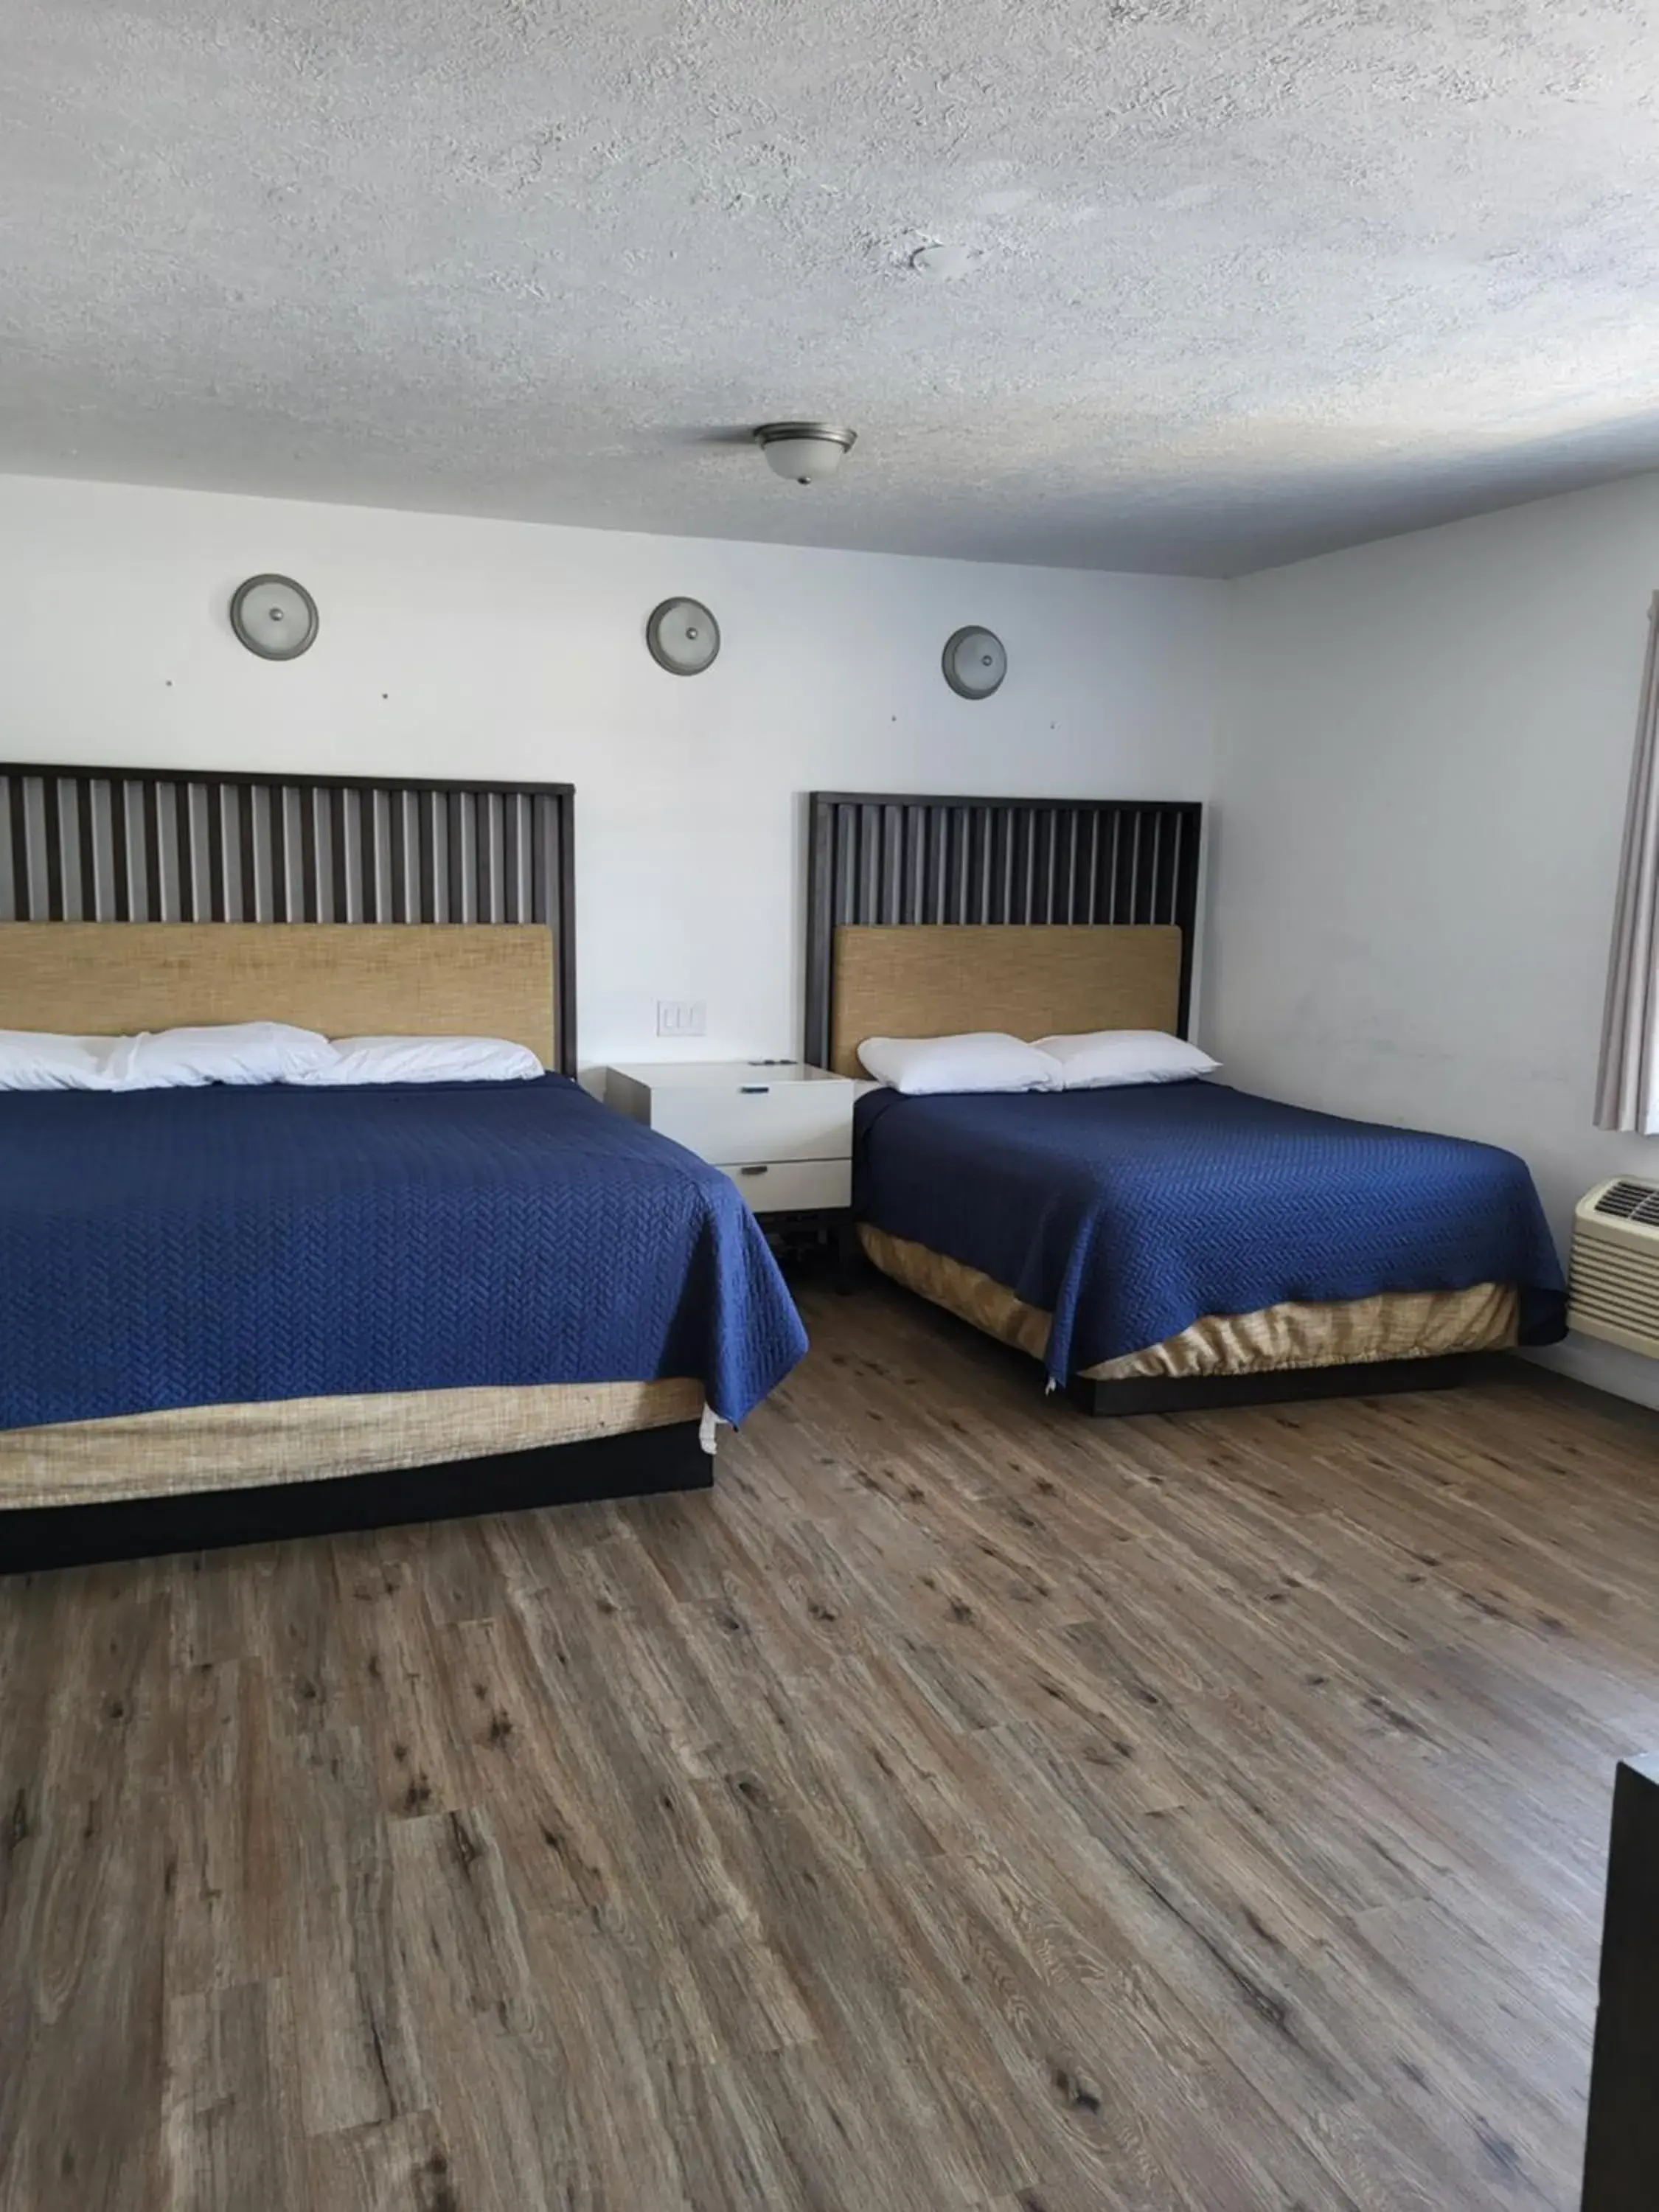 Bed in Budget Inn of Sebring